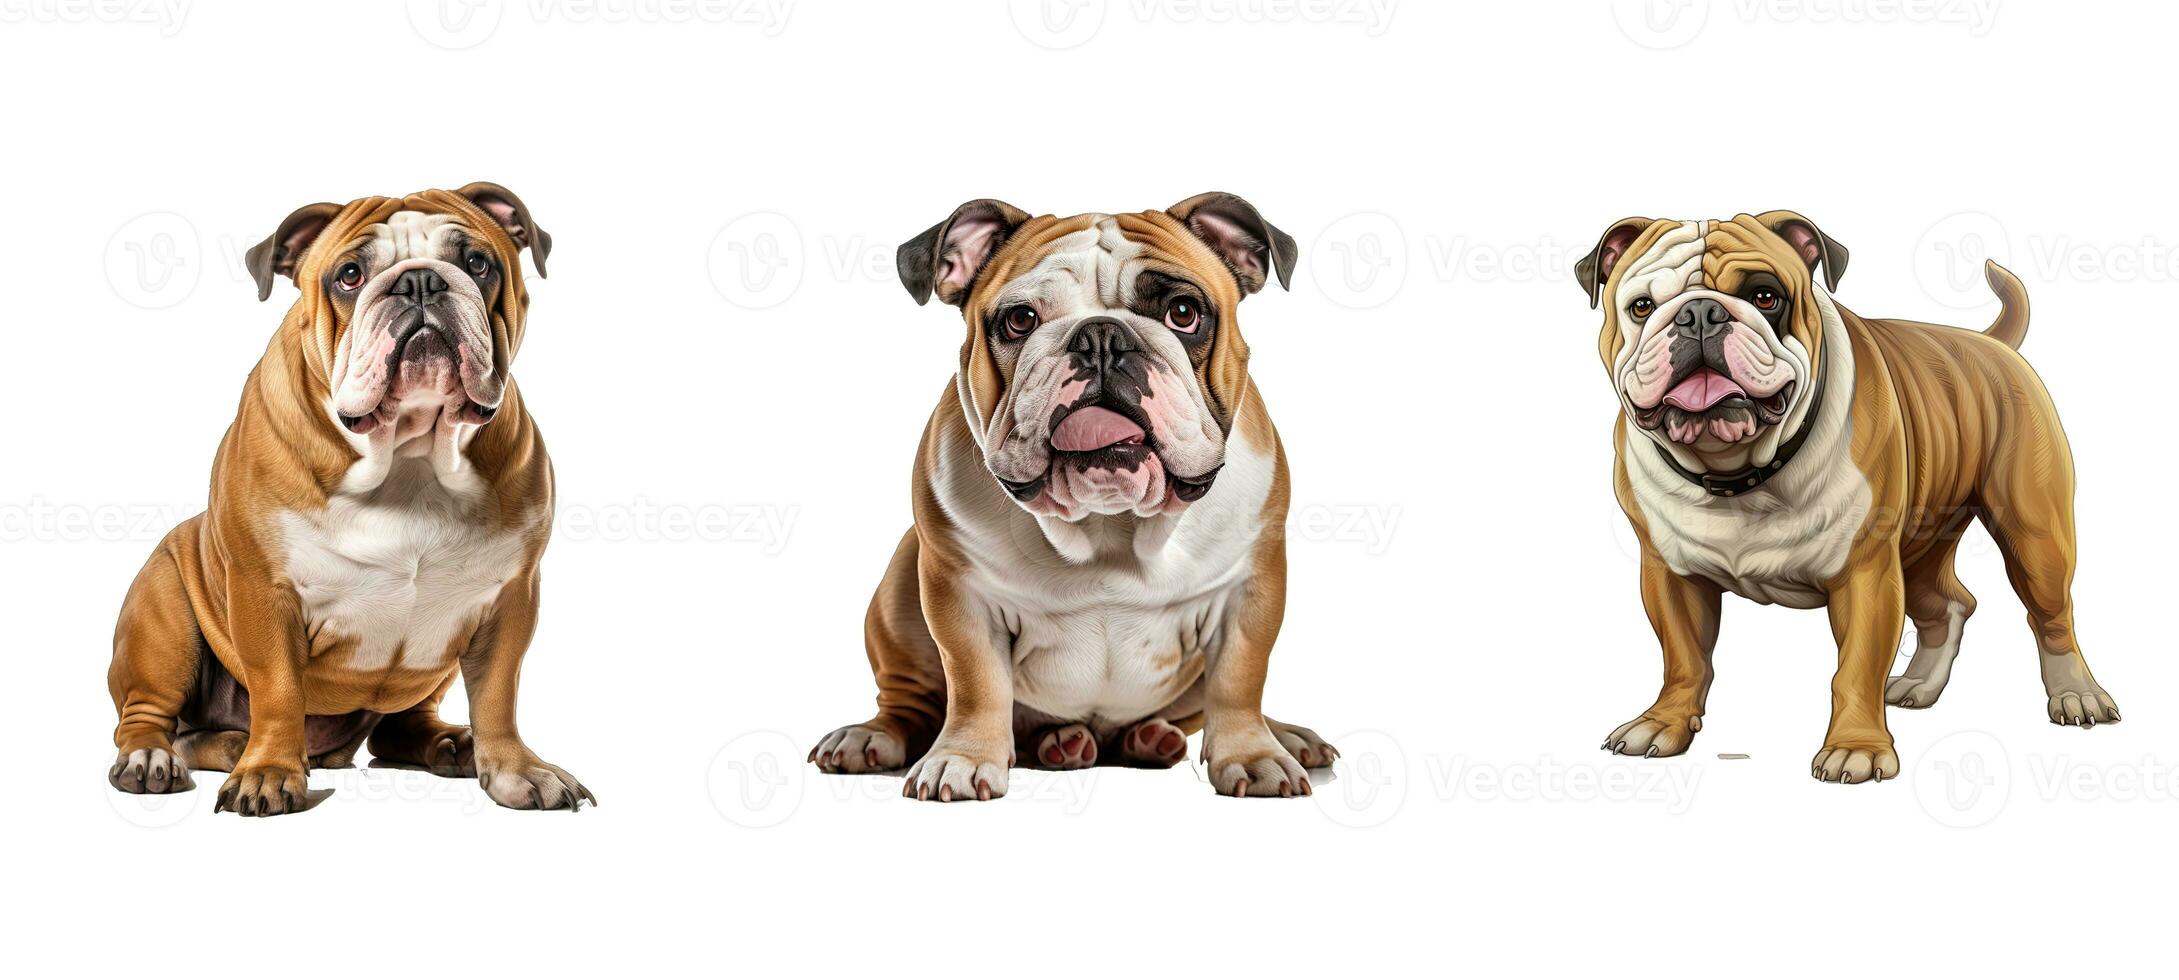 hoektand bulldog dier foto